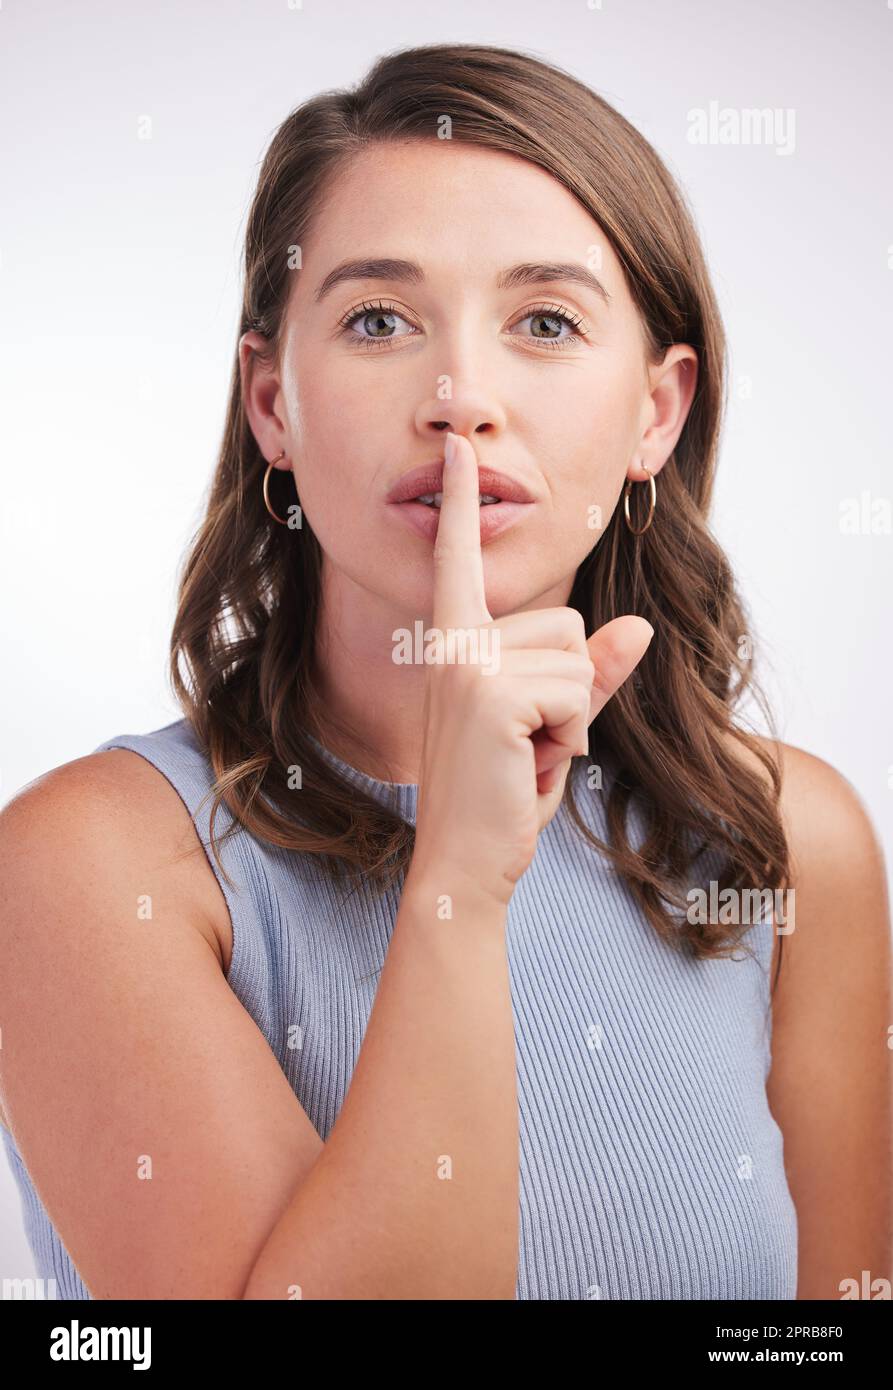 Mieux vaut ne pas dire à qui que ce soit. Portrait studio d'une jeune femme avec son doigt sur ses lèvres sur fond gris. Banque D'Images